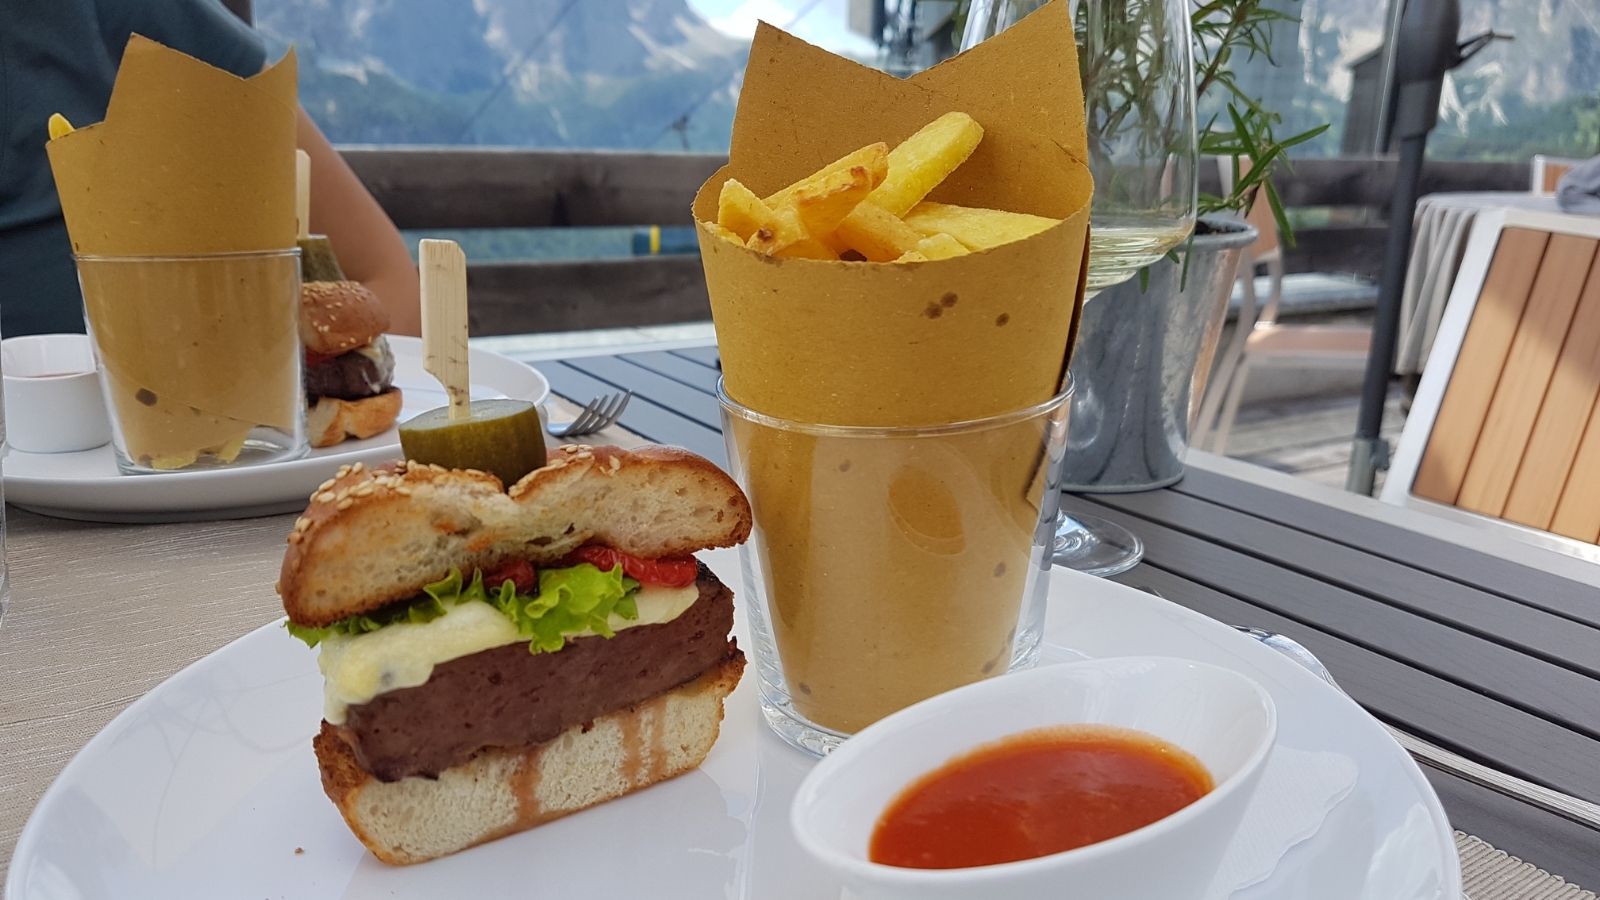 Uno speciale hamburger creato in occasione dell'iniziativa "In vetta con gusto", al Rifugio Col Alto, in Alta Badia